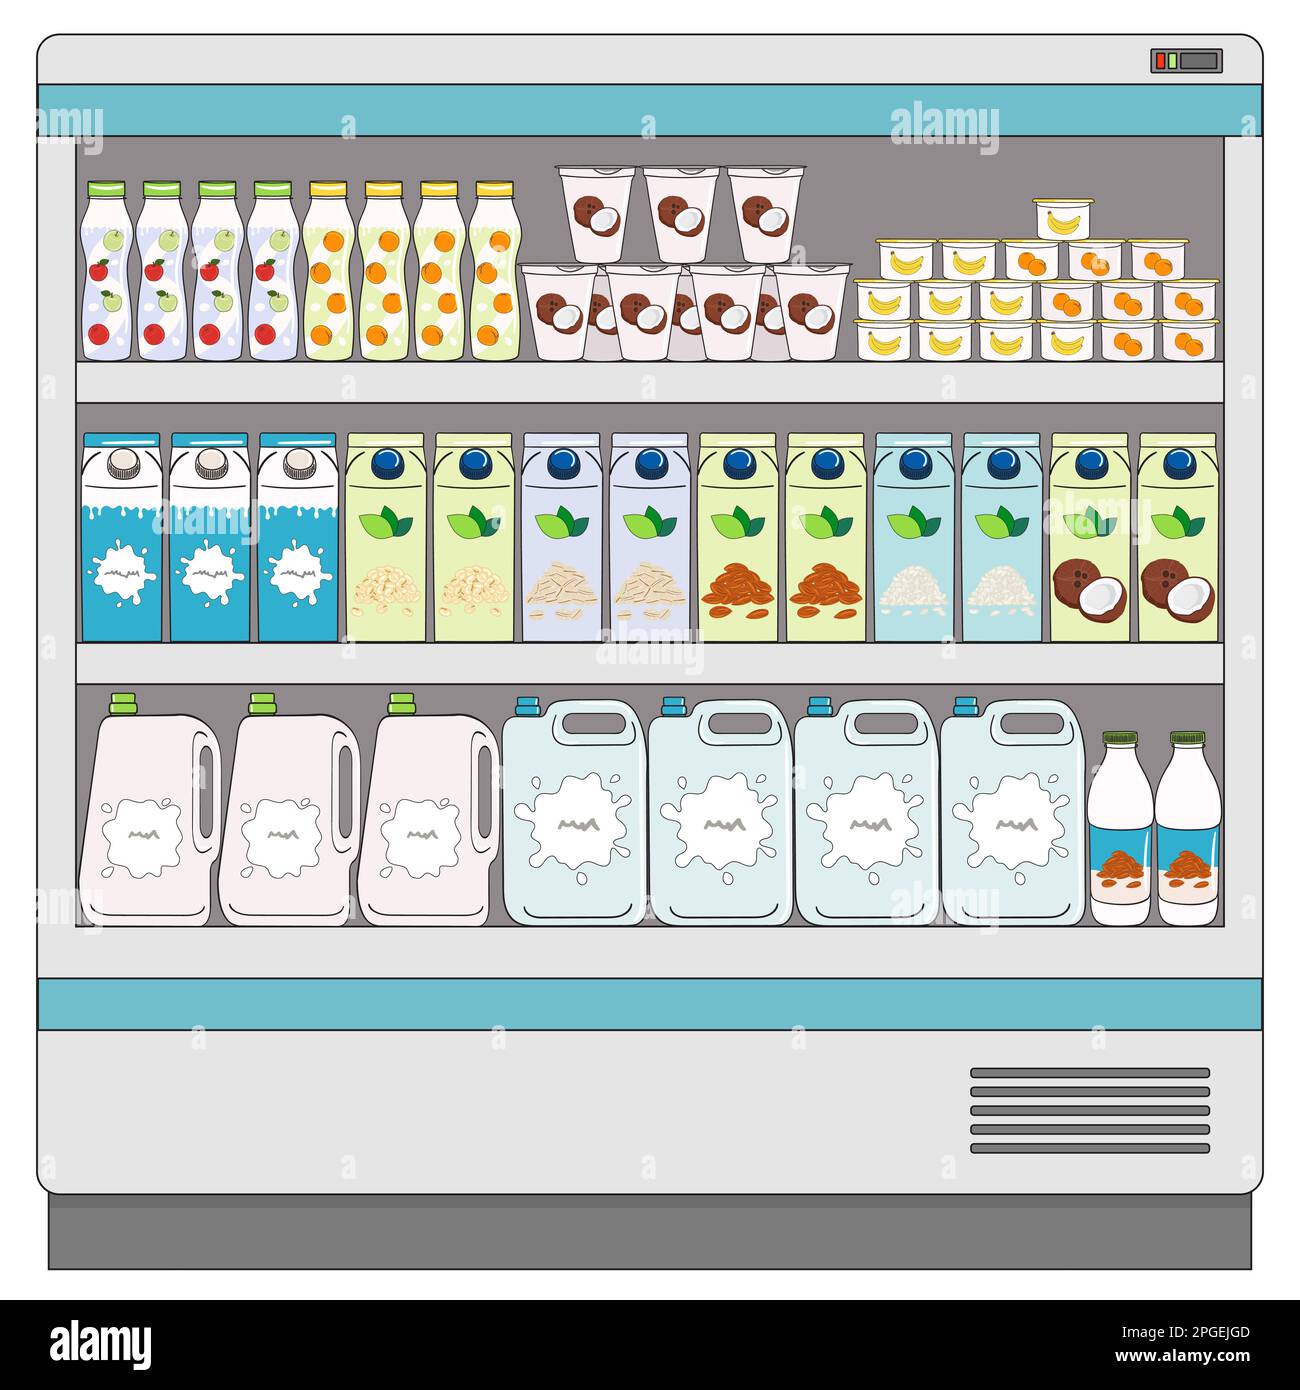 Kühlbox zum Kühlen von Milchprodukten. Milch- und vegane Milchalternativen auf Kühlregalen im Supermarkt. Milchflaschen, Kartons, Joghurt. Mil Stock Vektor